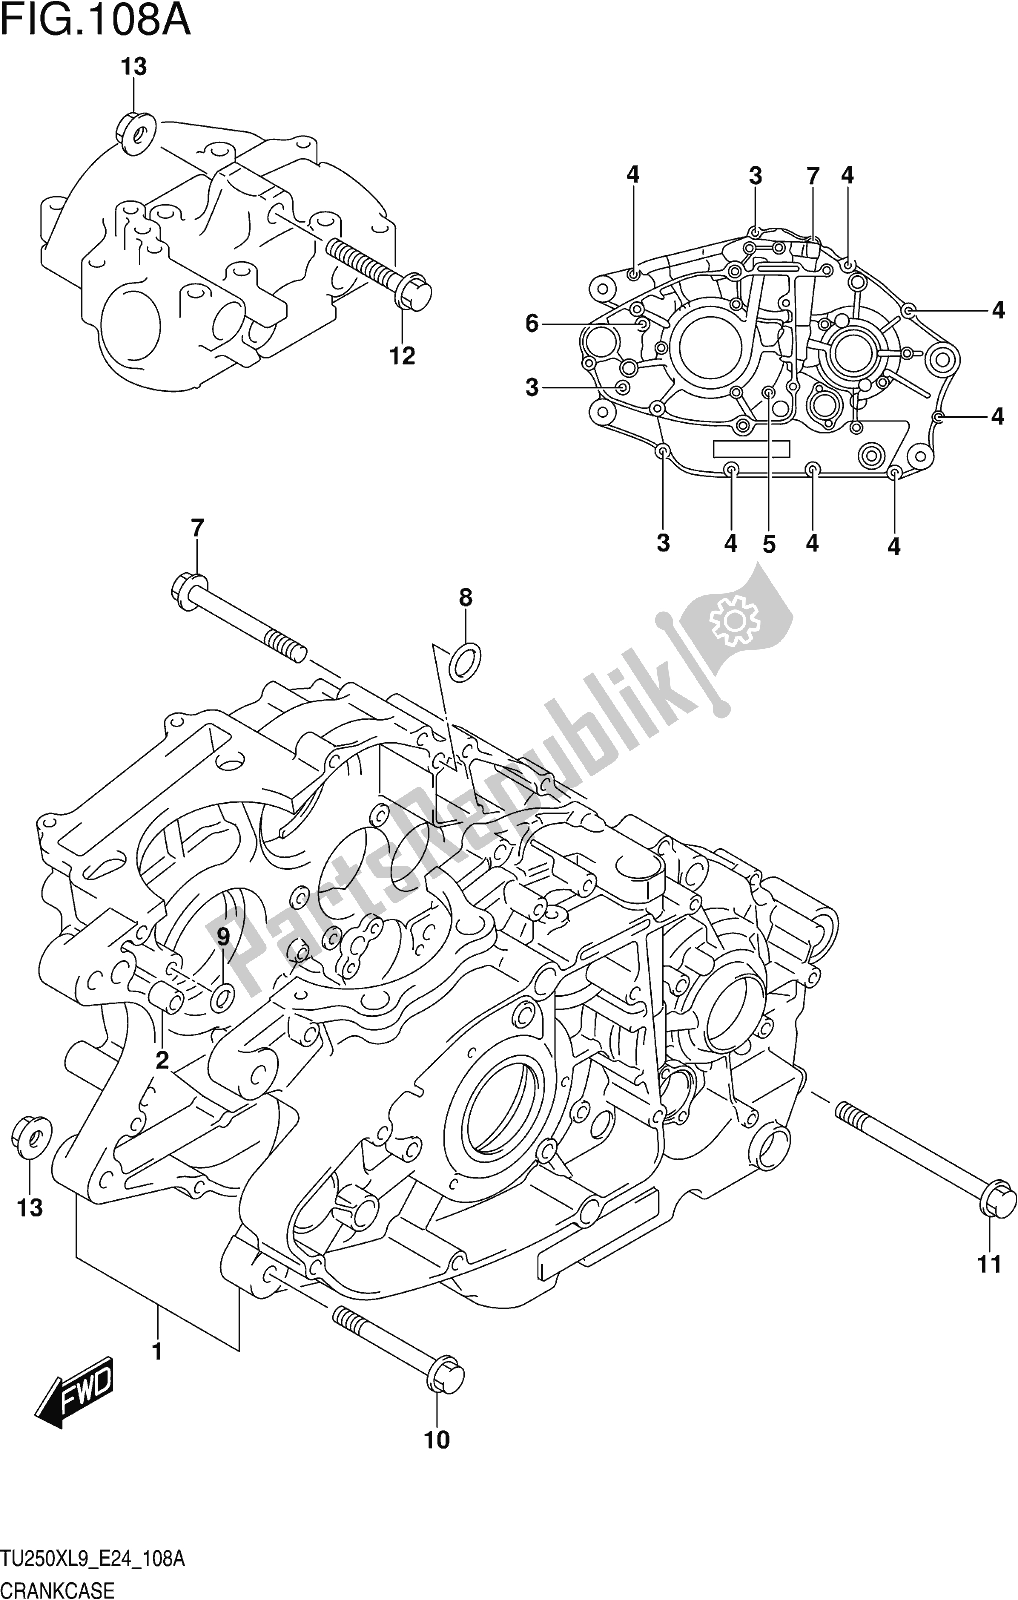 Alle onderdelen voor de Fig. 108a Crankcase van de Suzuki TU 250X 2019